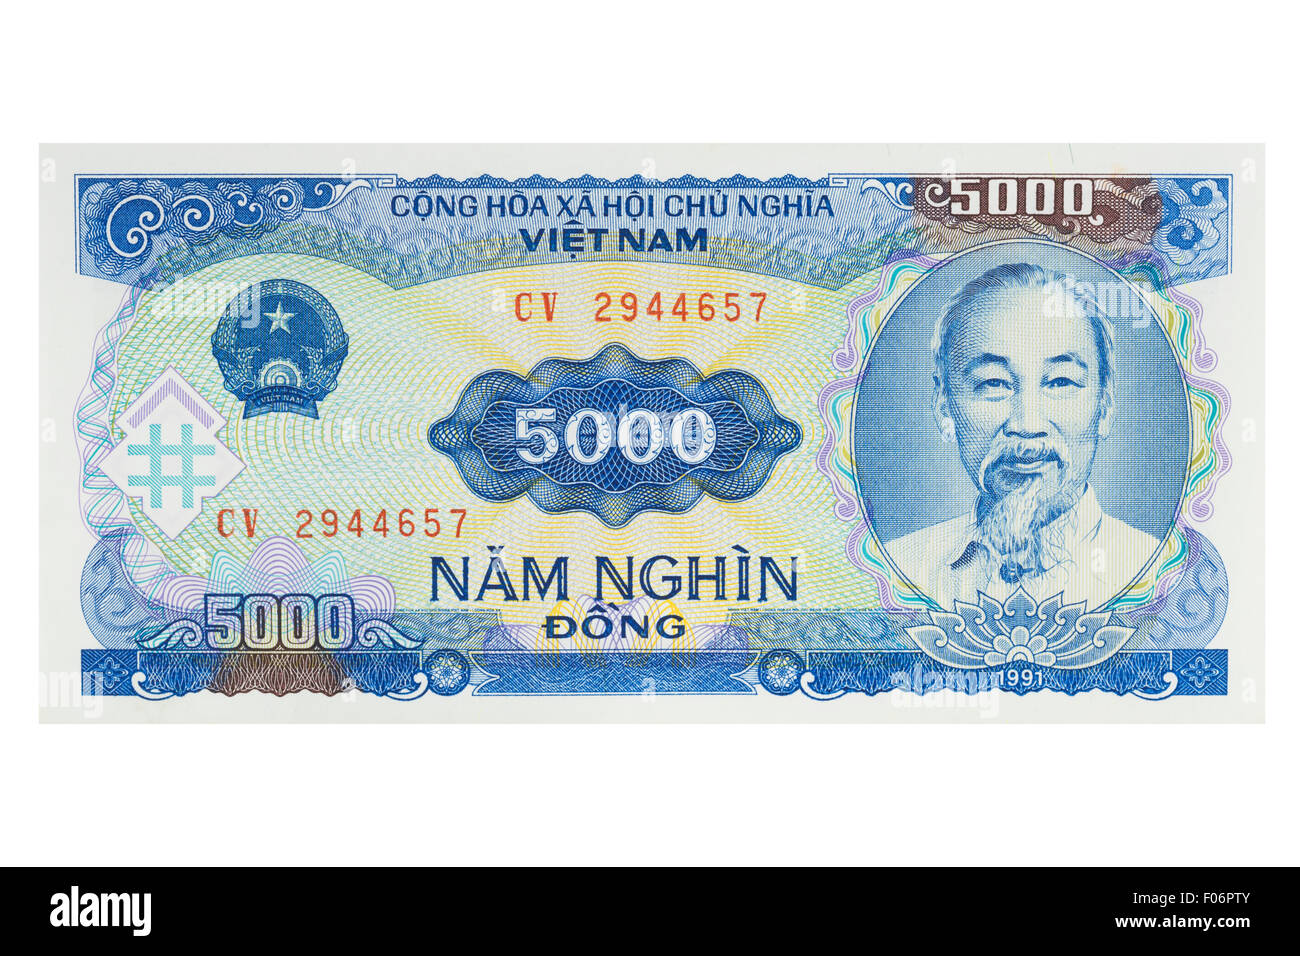 Cinq mille dongs vietnamiens billet sur un fond blanc Banque D'Images